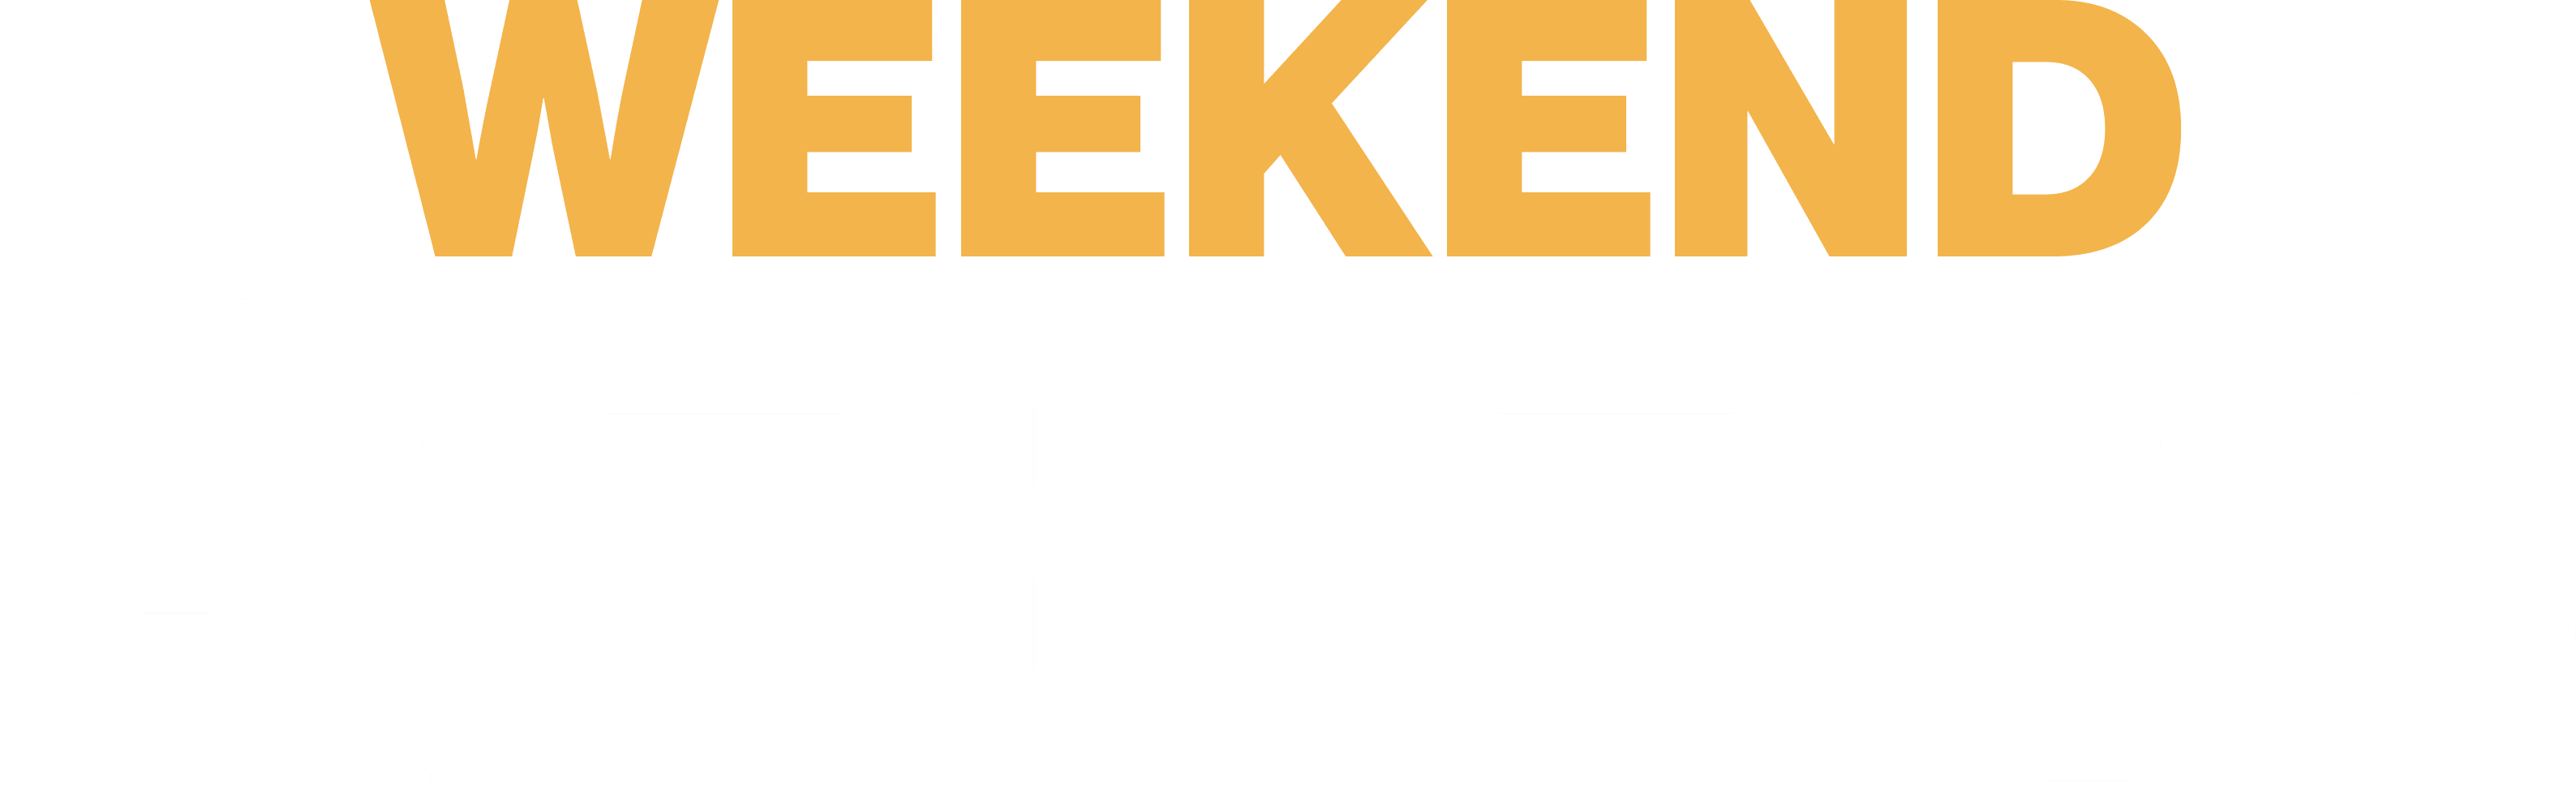 Weekend Rebels logo